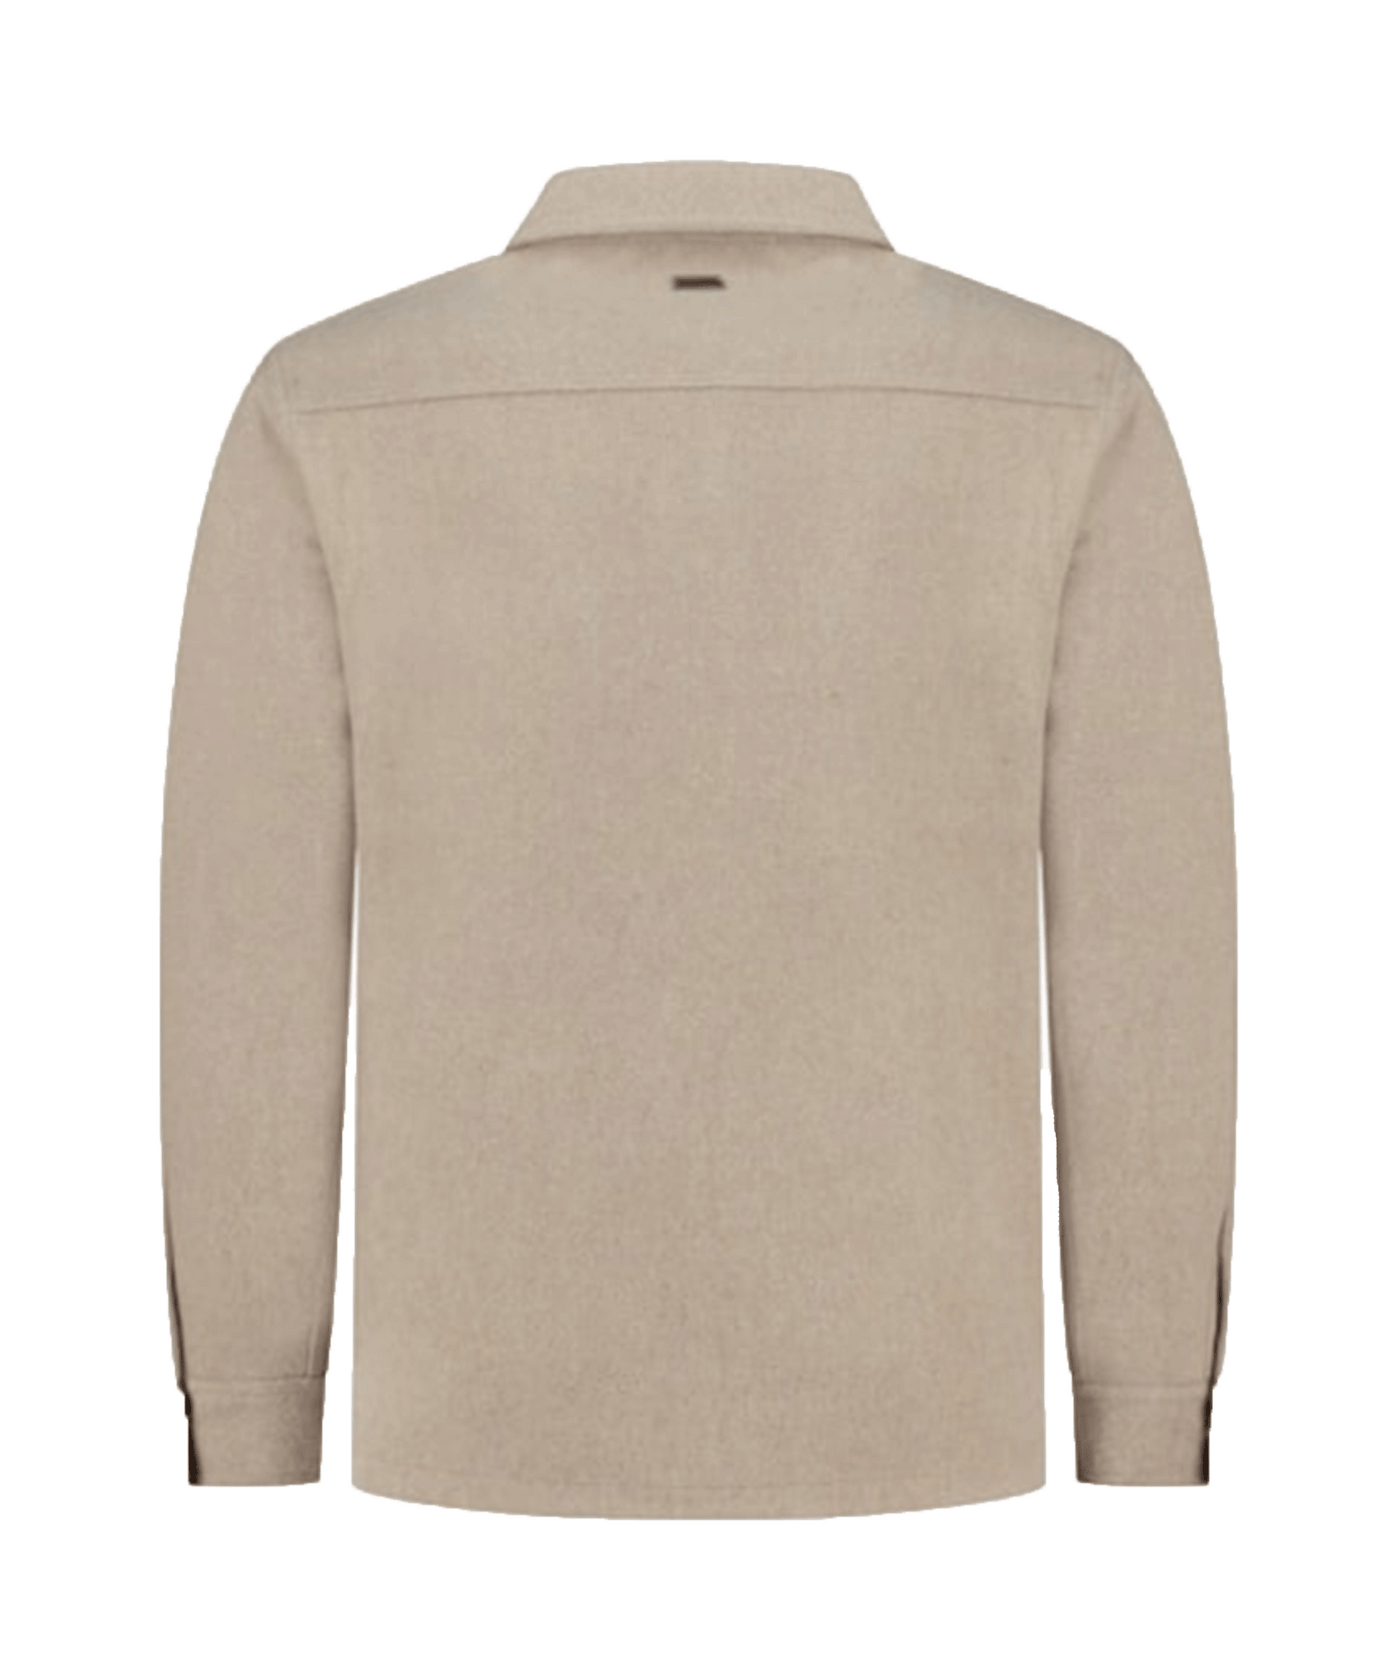 PureWhite - 23030205 - Wool Look Overshirt - Sand